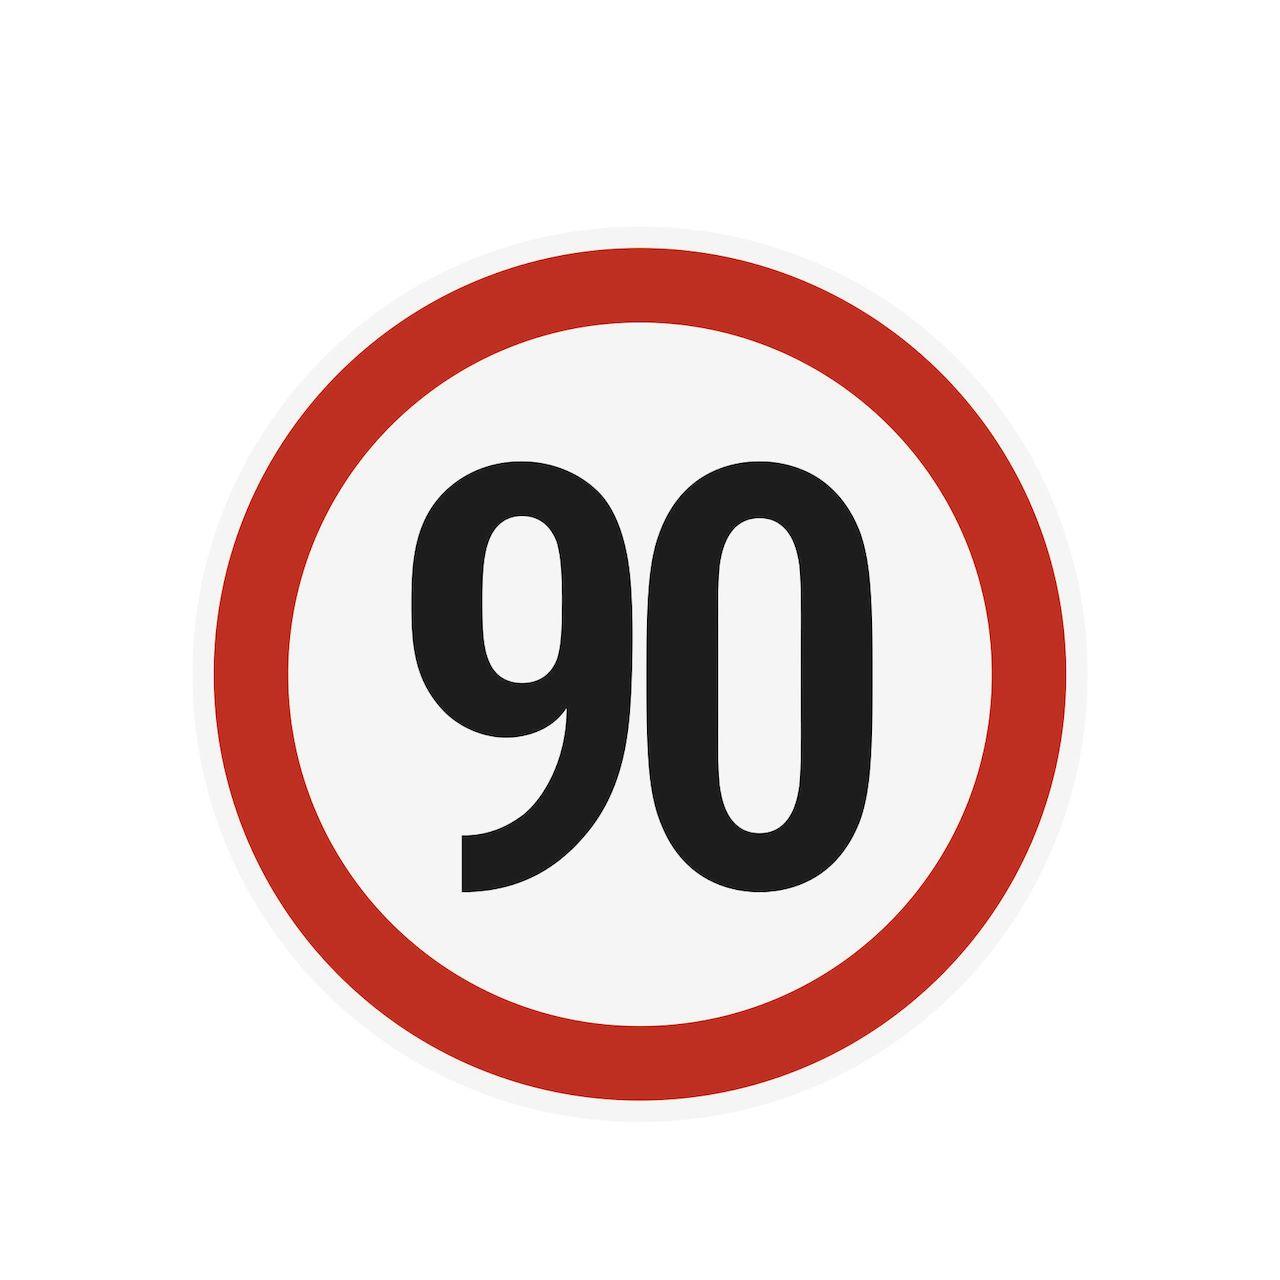 Наклейка ограничения скорости "90" для автотранспорта, 210х210 мм